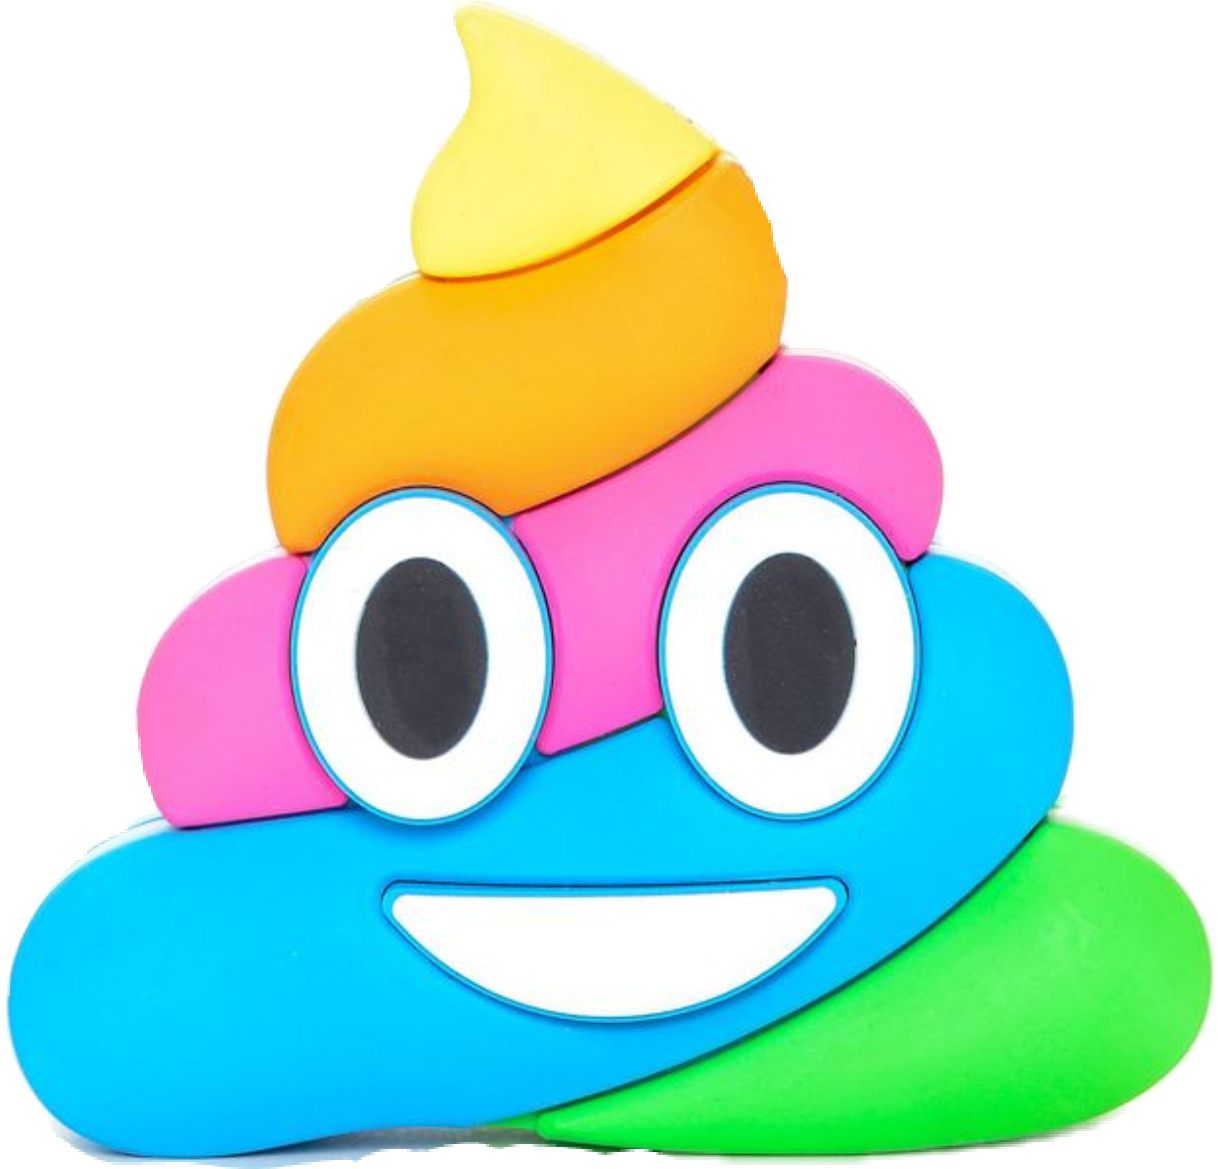 Imagen vectorial Emoji PNG imagen Transparente